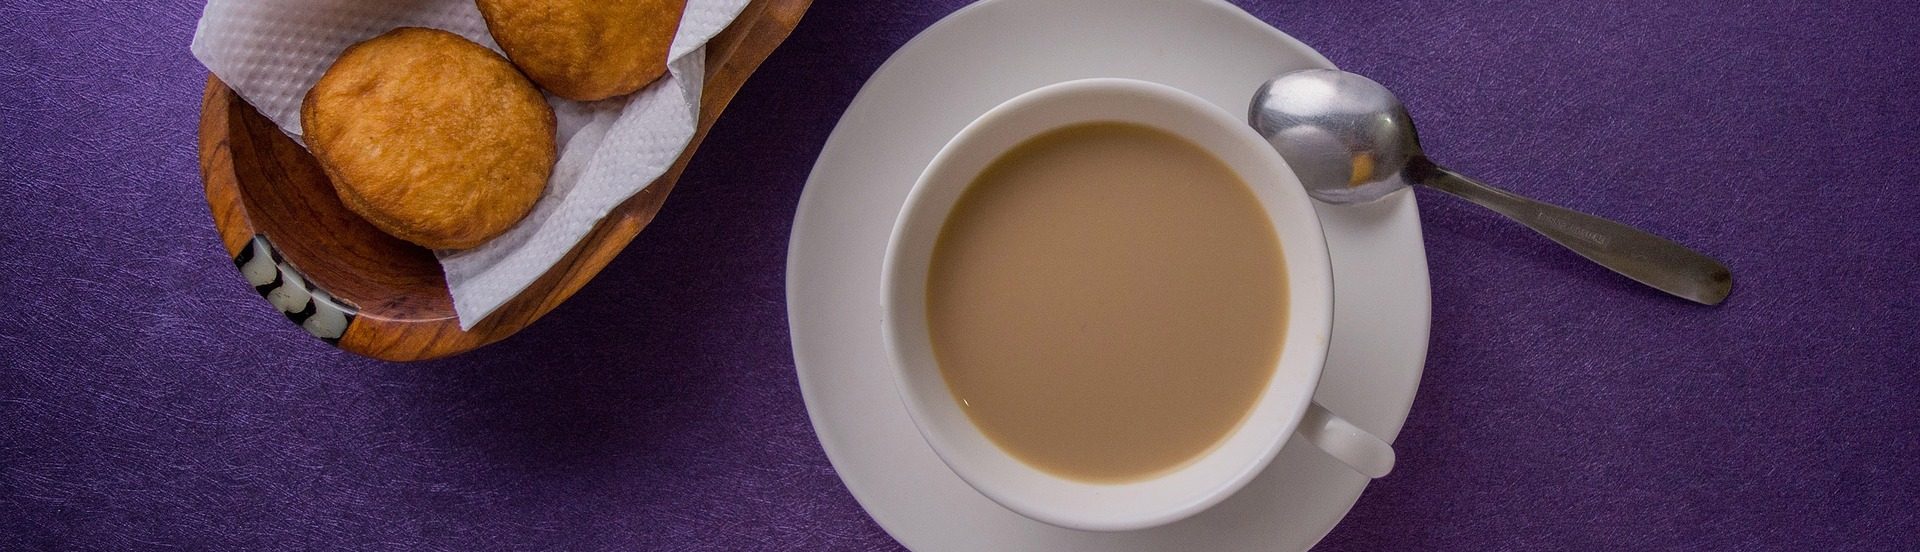 Чай с молоком: чем он полезен, а чем вреден